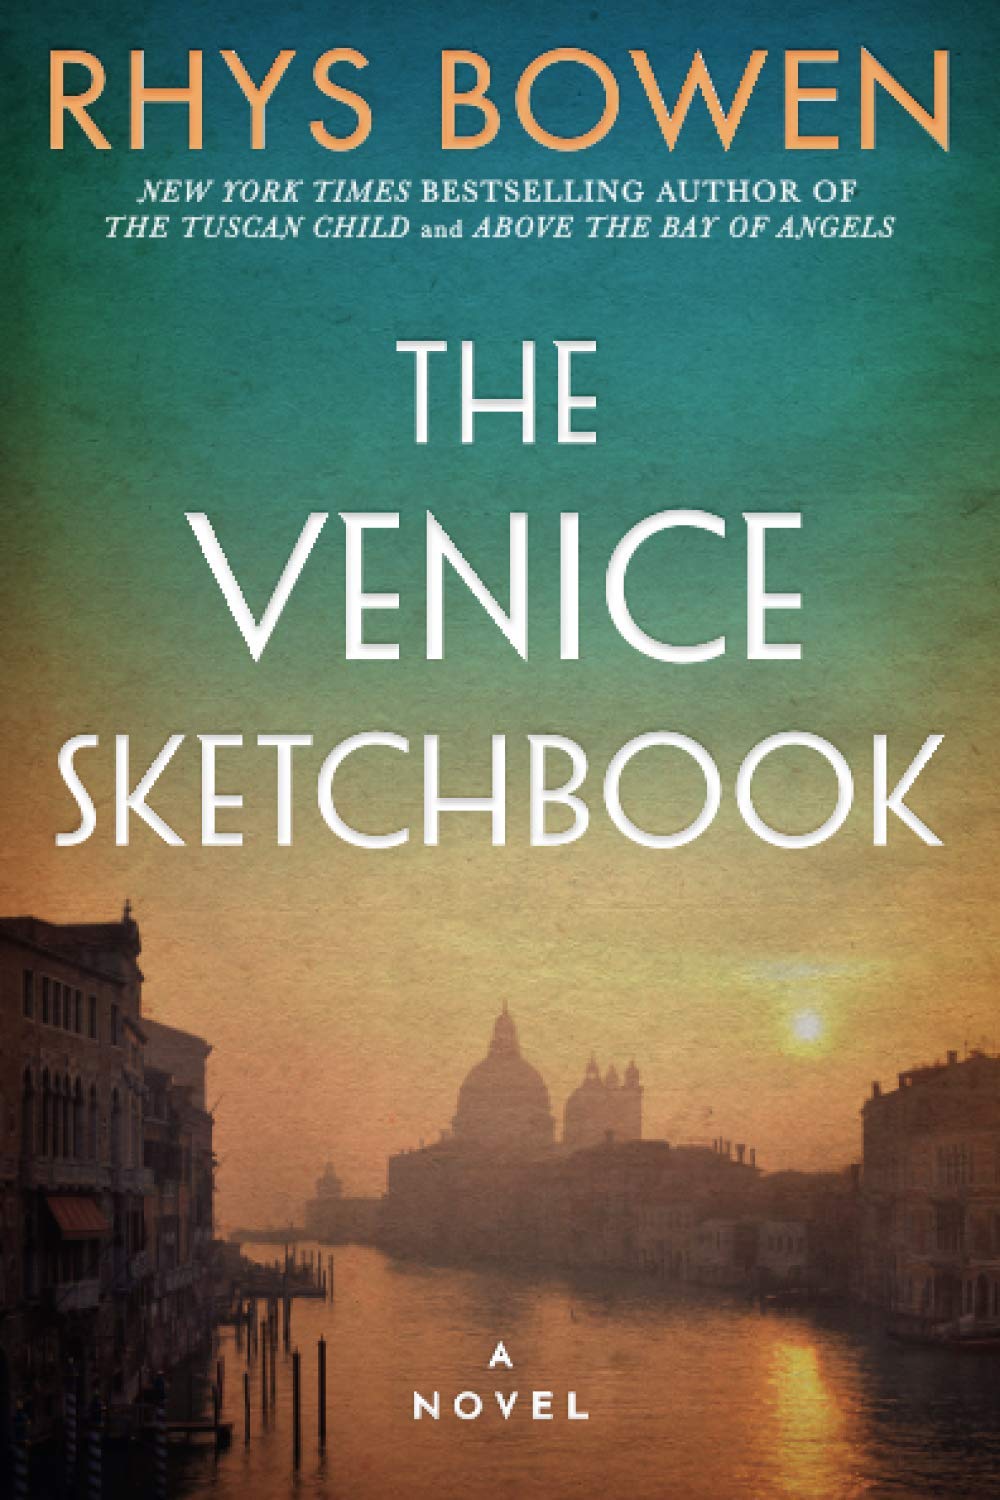 Image for "Venice Sketchbook"